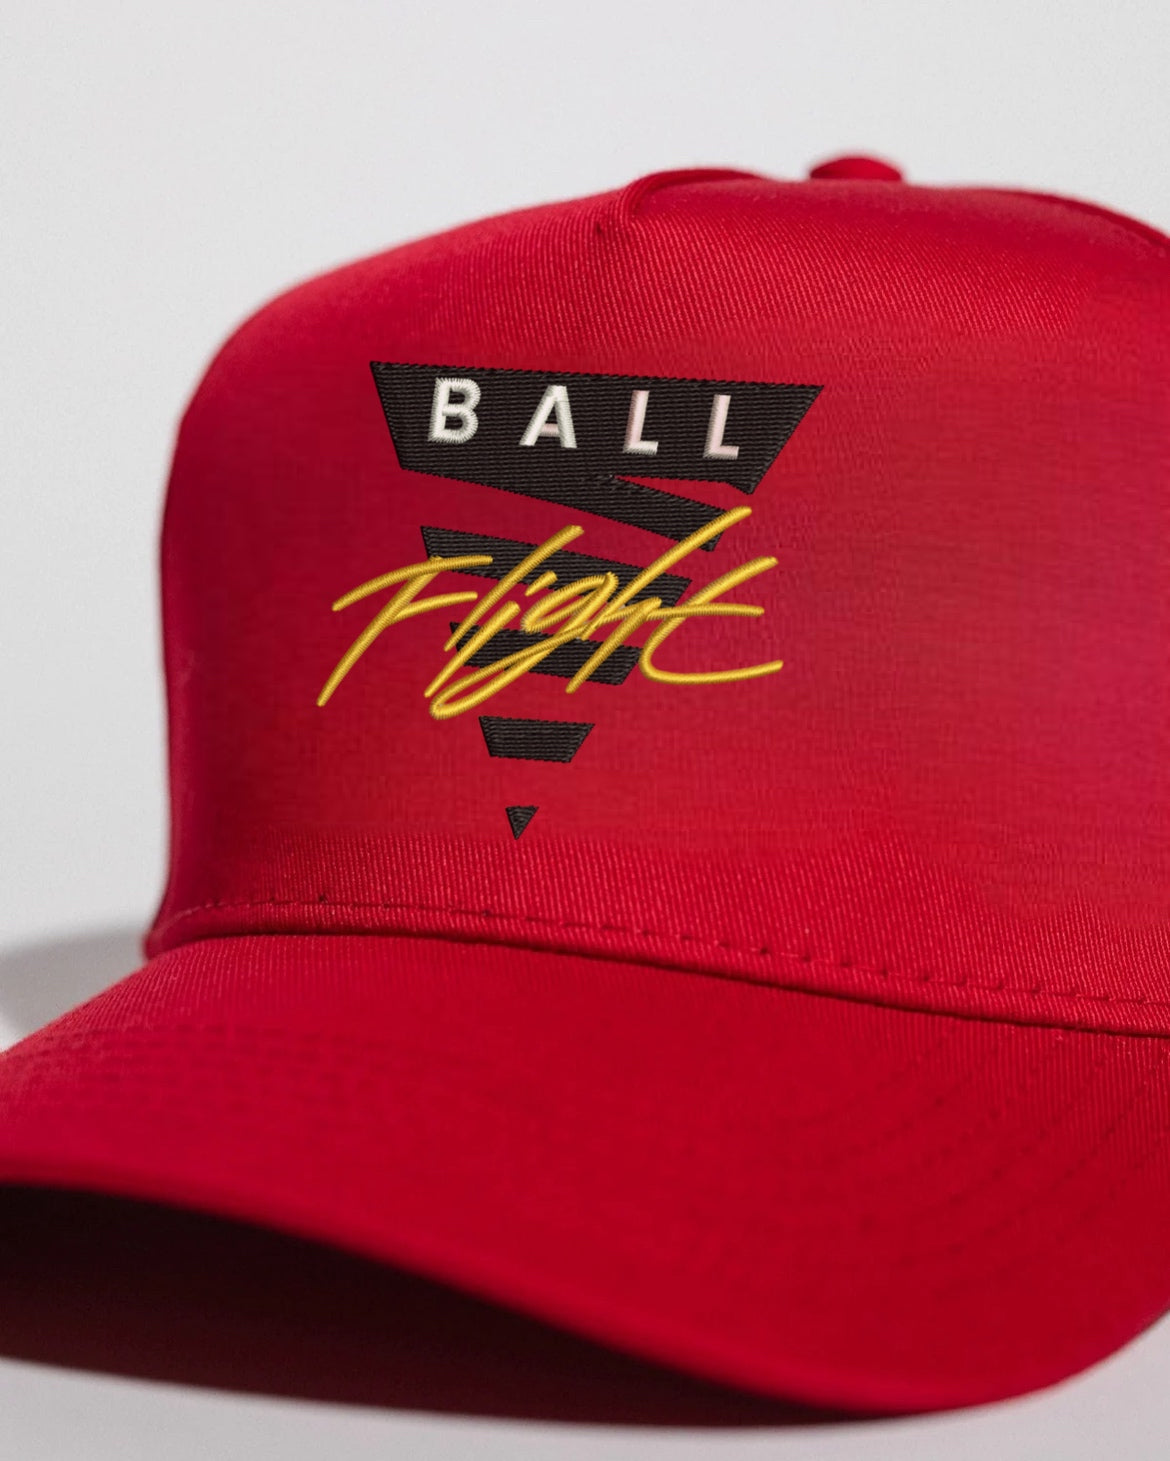 VINTAGE BALL FLIGHT SNAPBACK HAT - SPORT RED